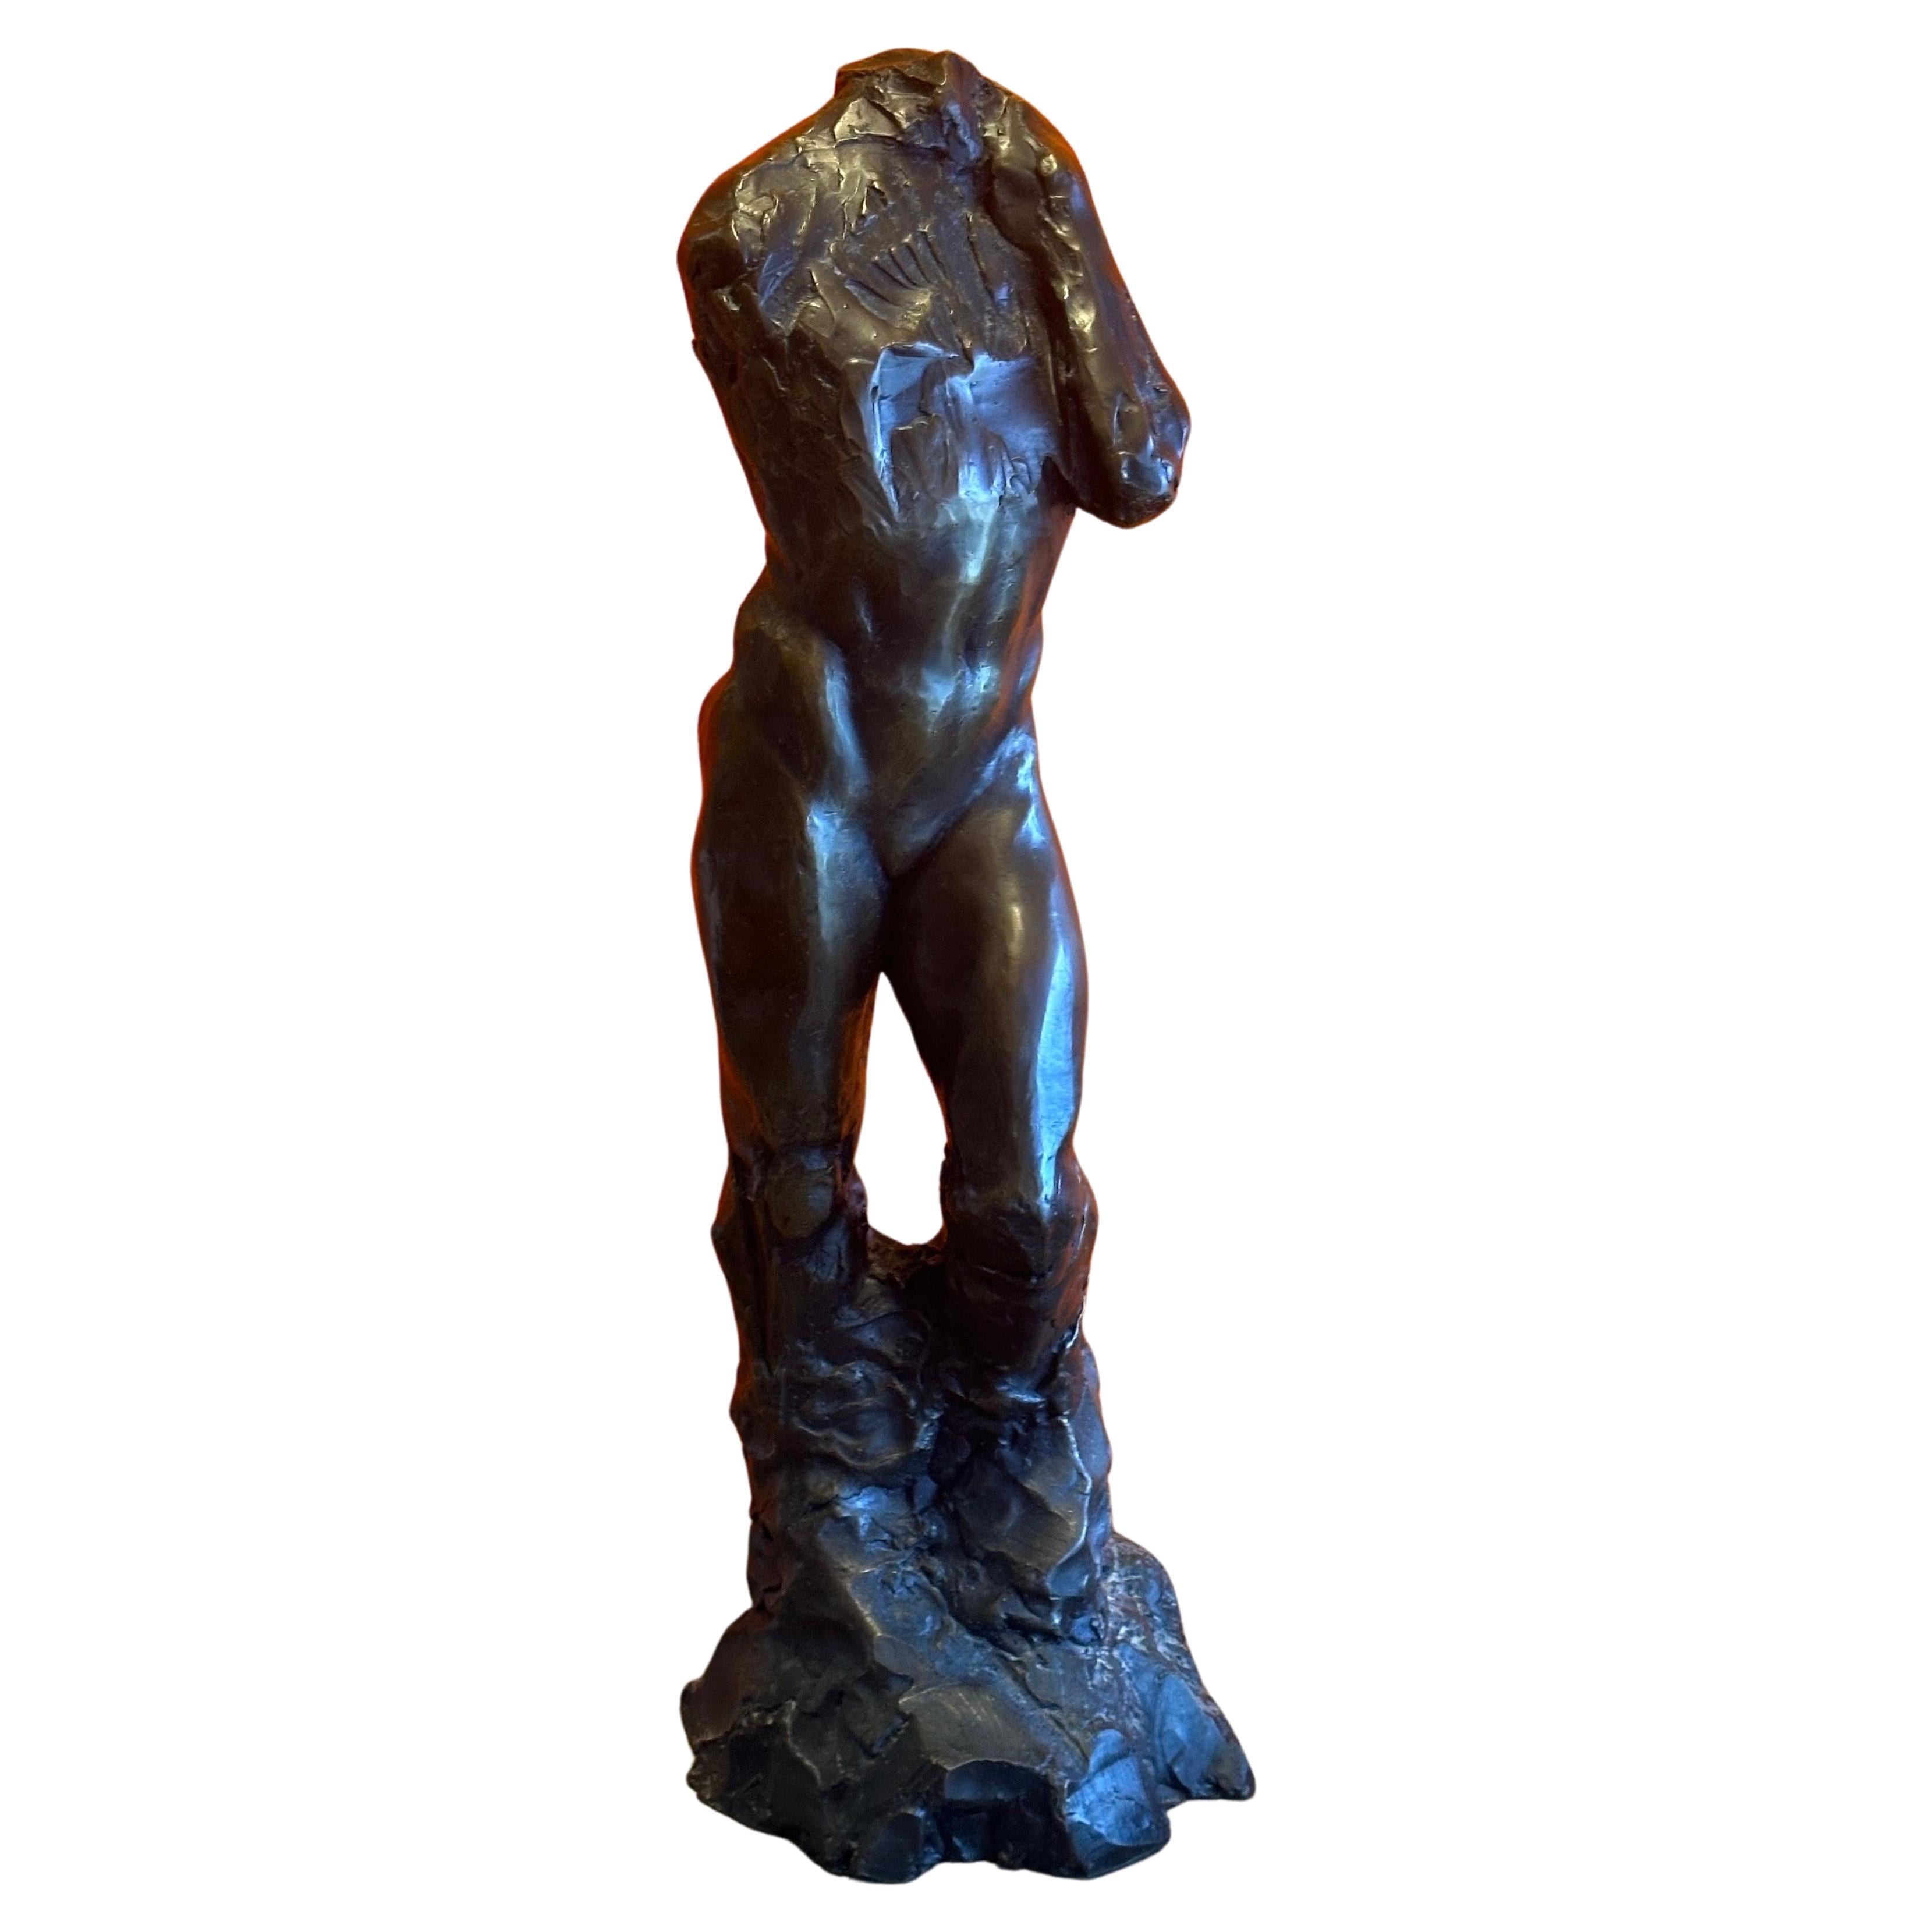 Grande sculpture figurative en bronze intitulée « Adam's Rib » de Roark Congdon